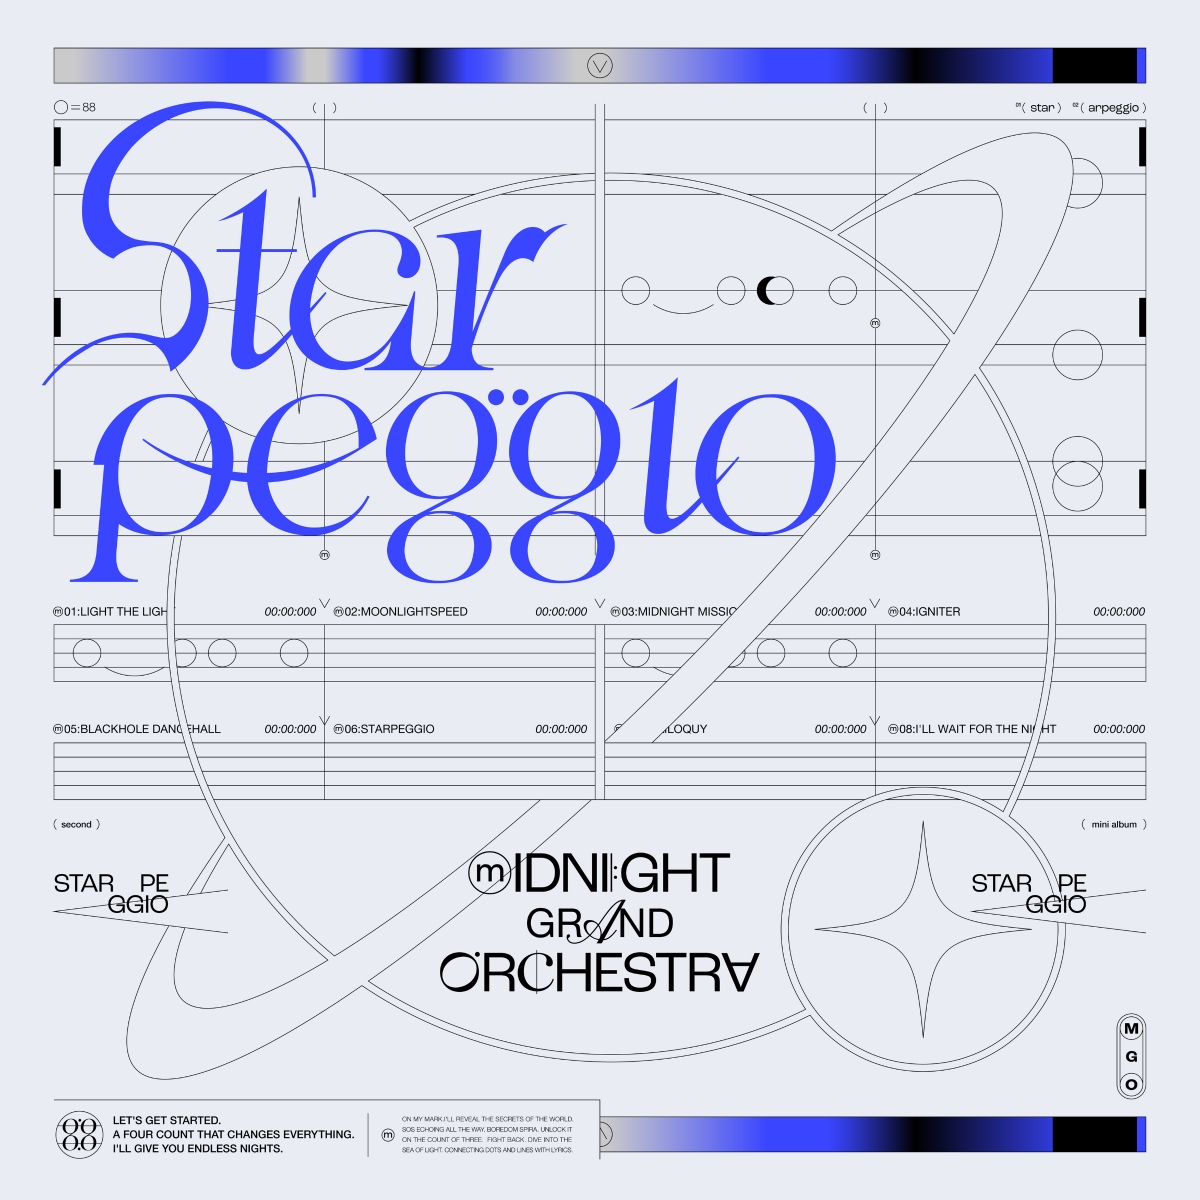 楽天ブックス: Starpeggio - Midnight Grand Orchestra 